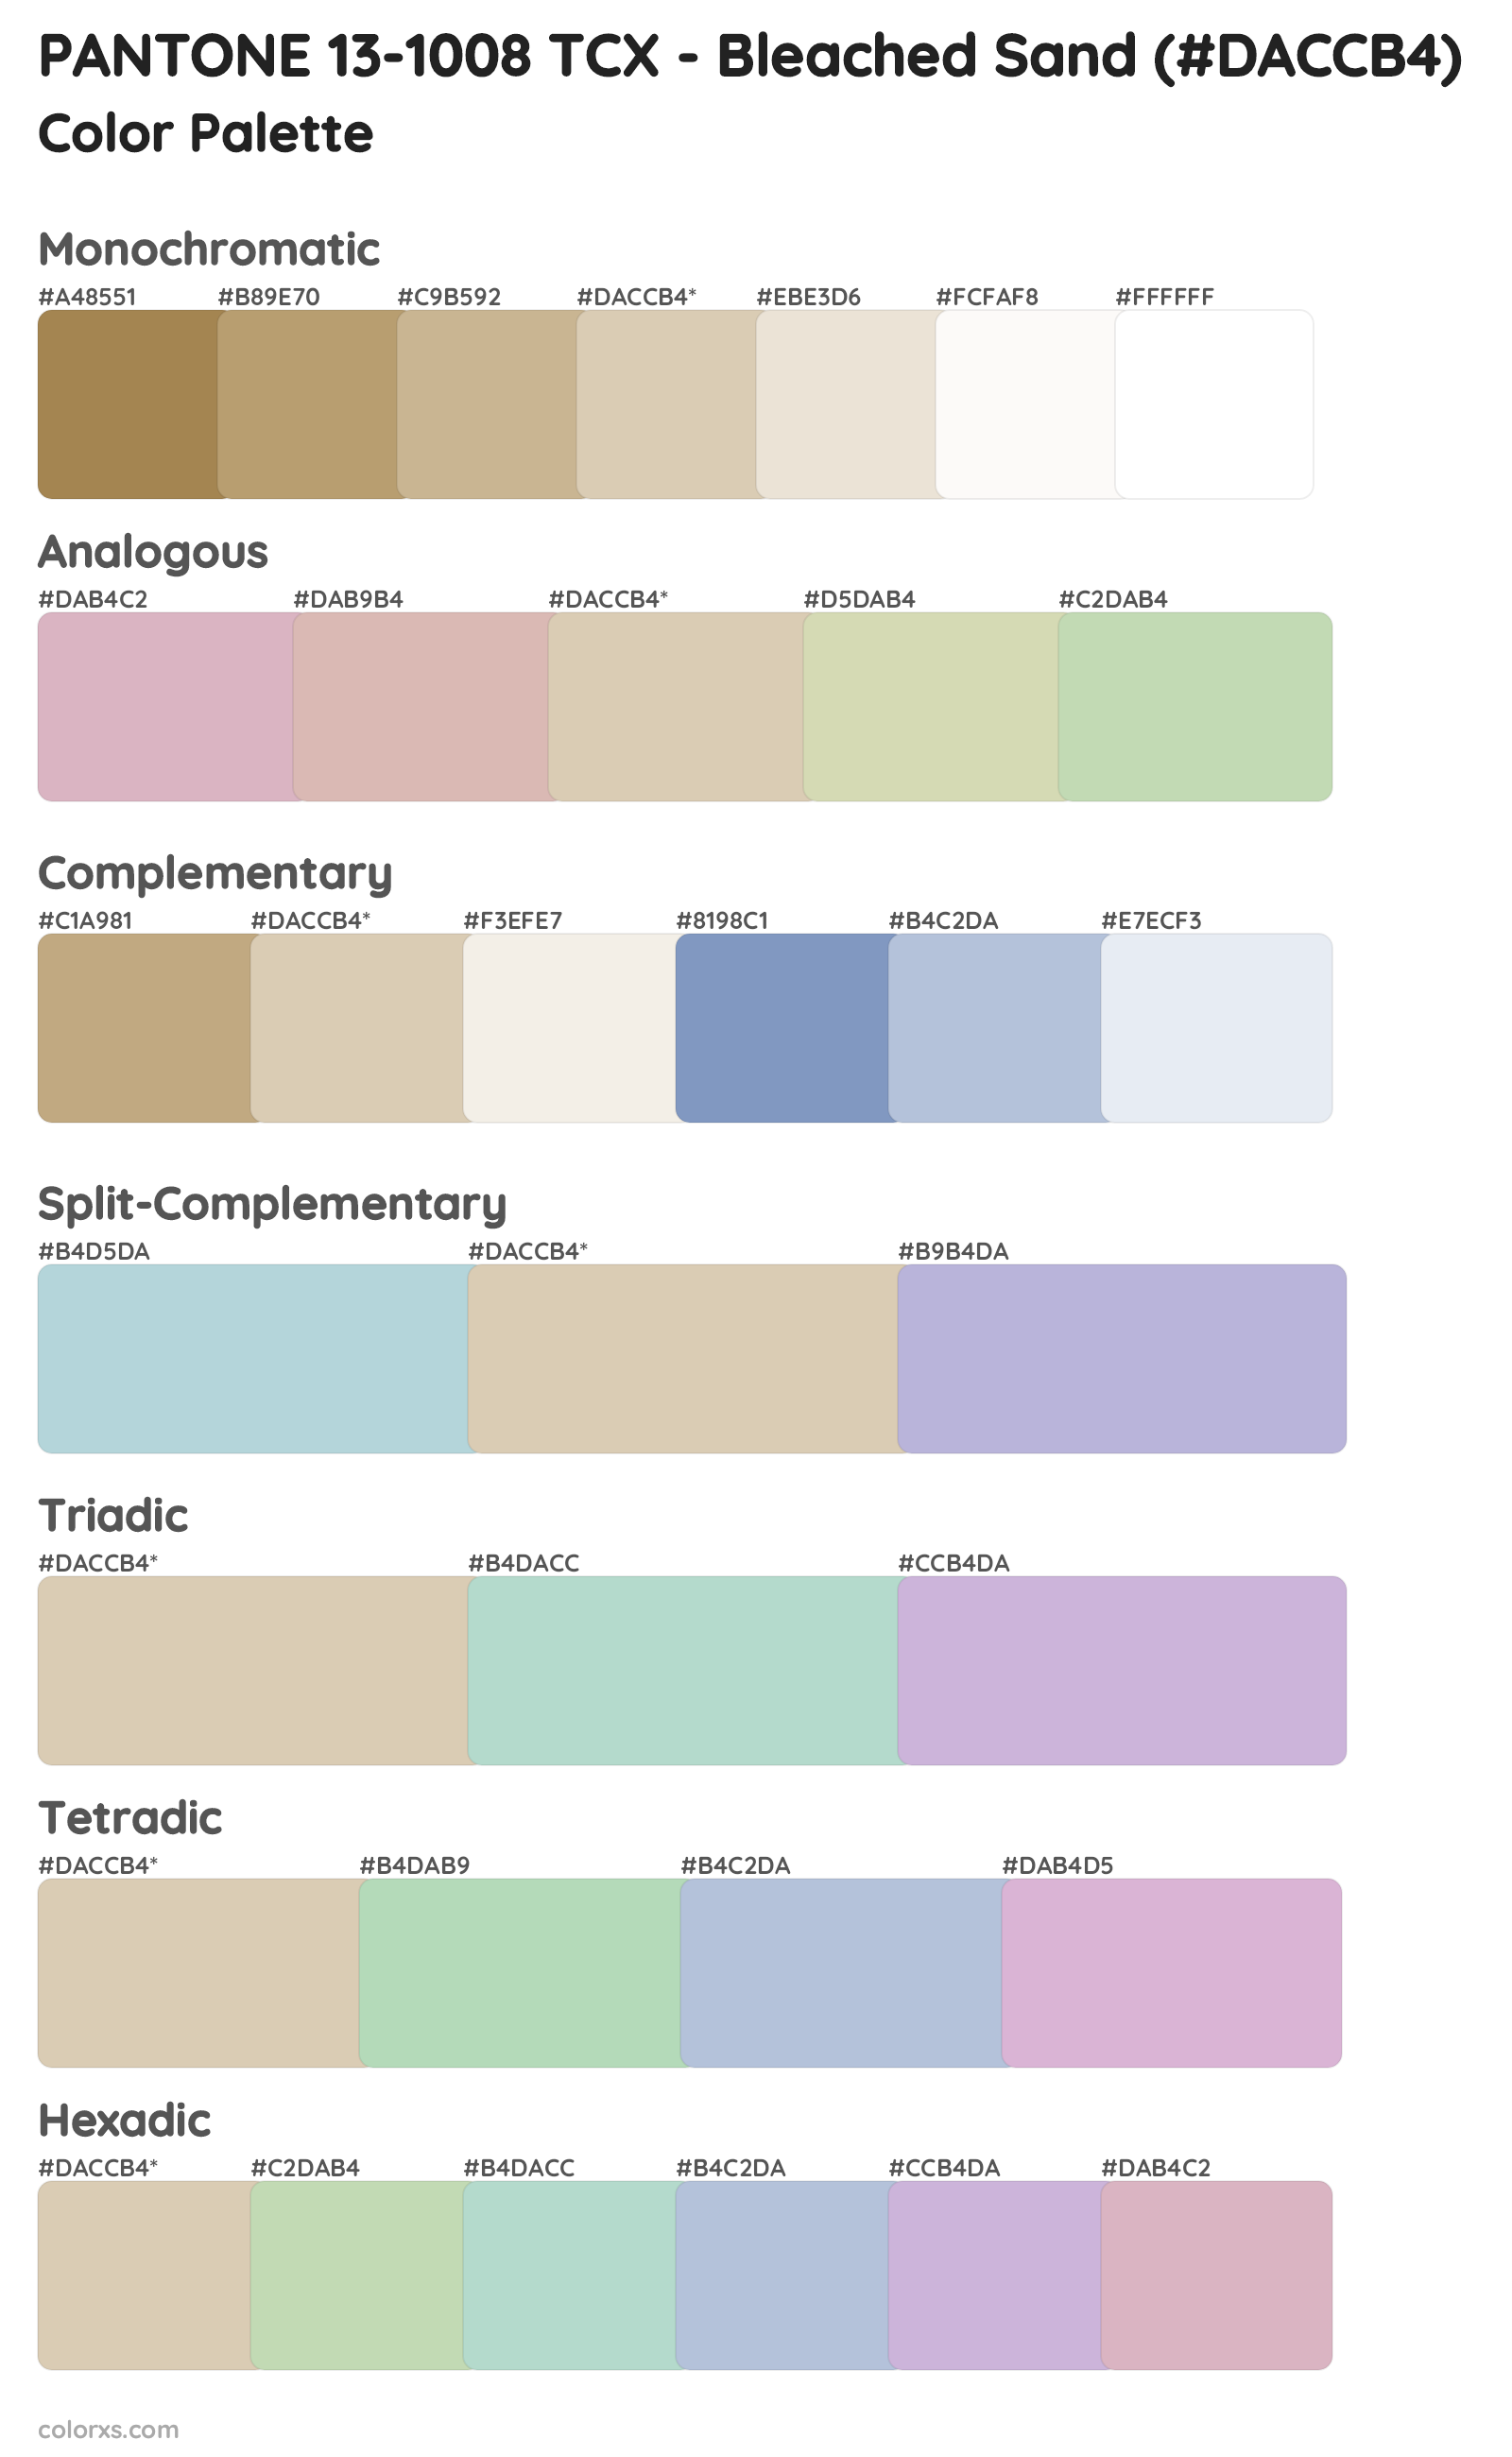 PANTONE 13-1008 TCX - Bleached Sand Color Scheme Palettes